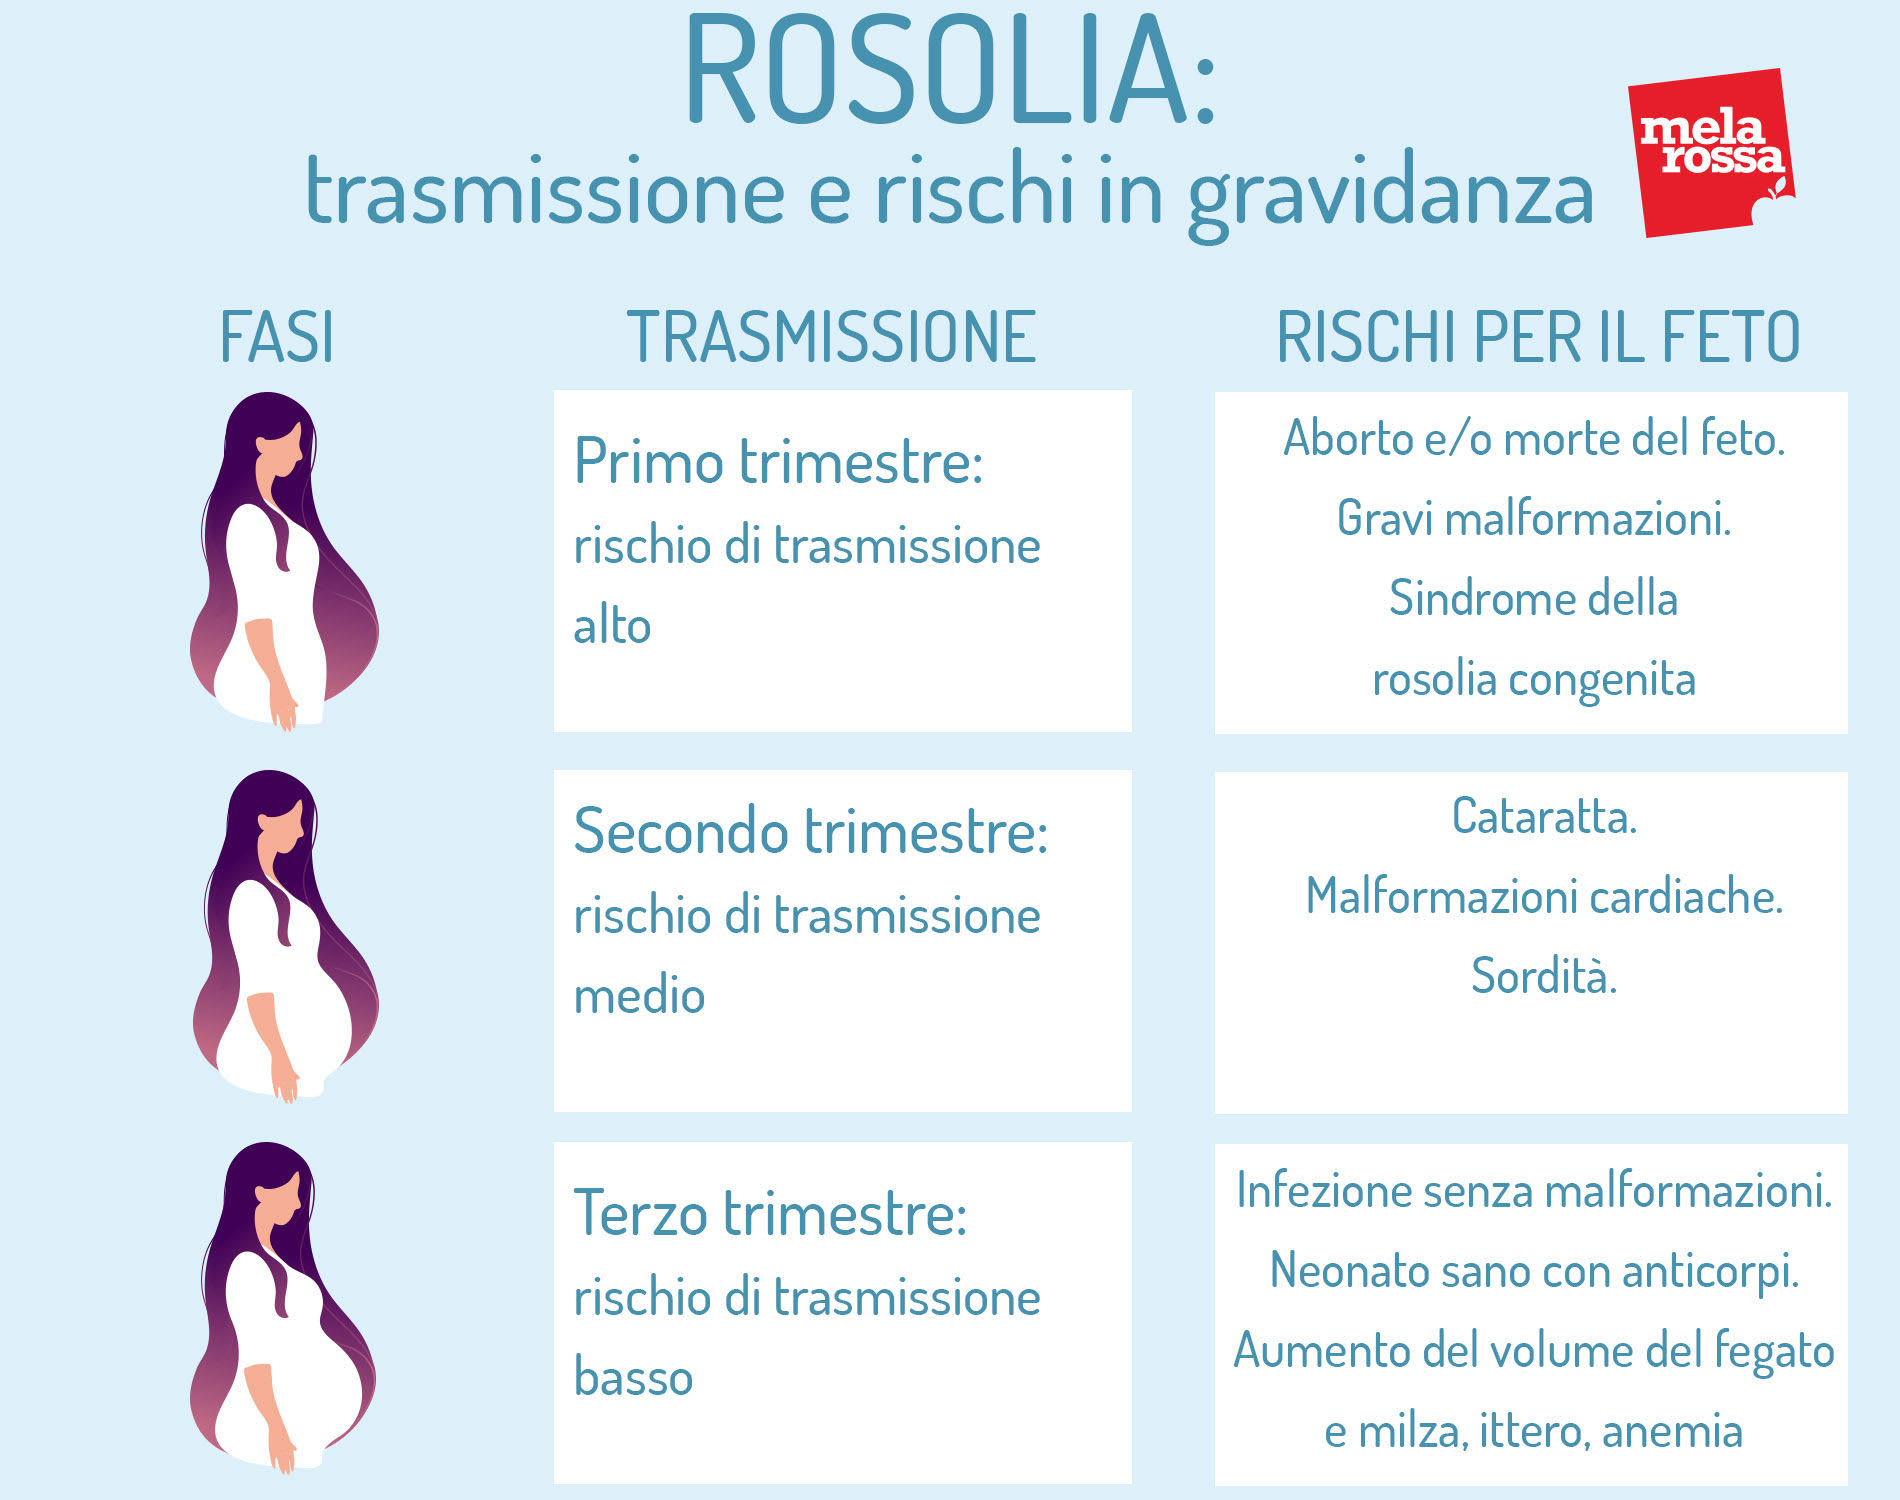 Rosolia: trasmissione e rischi in gravidanza mese per mese